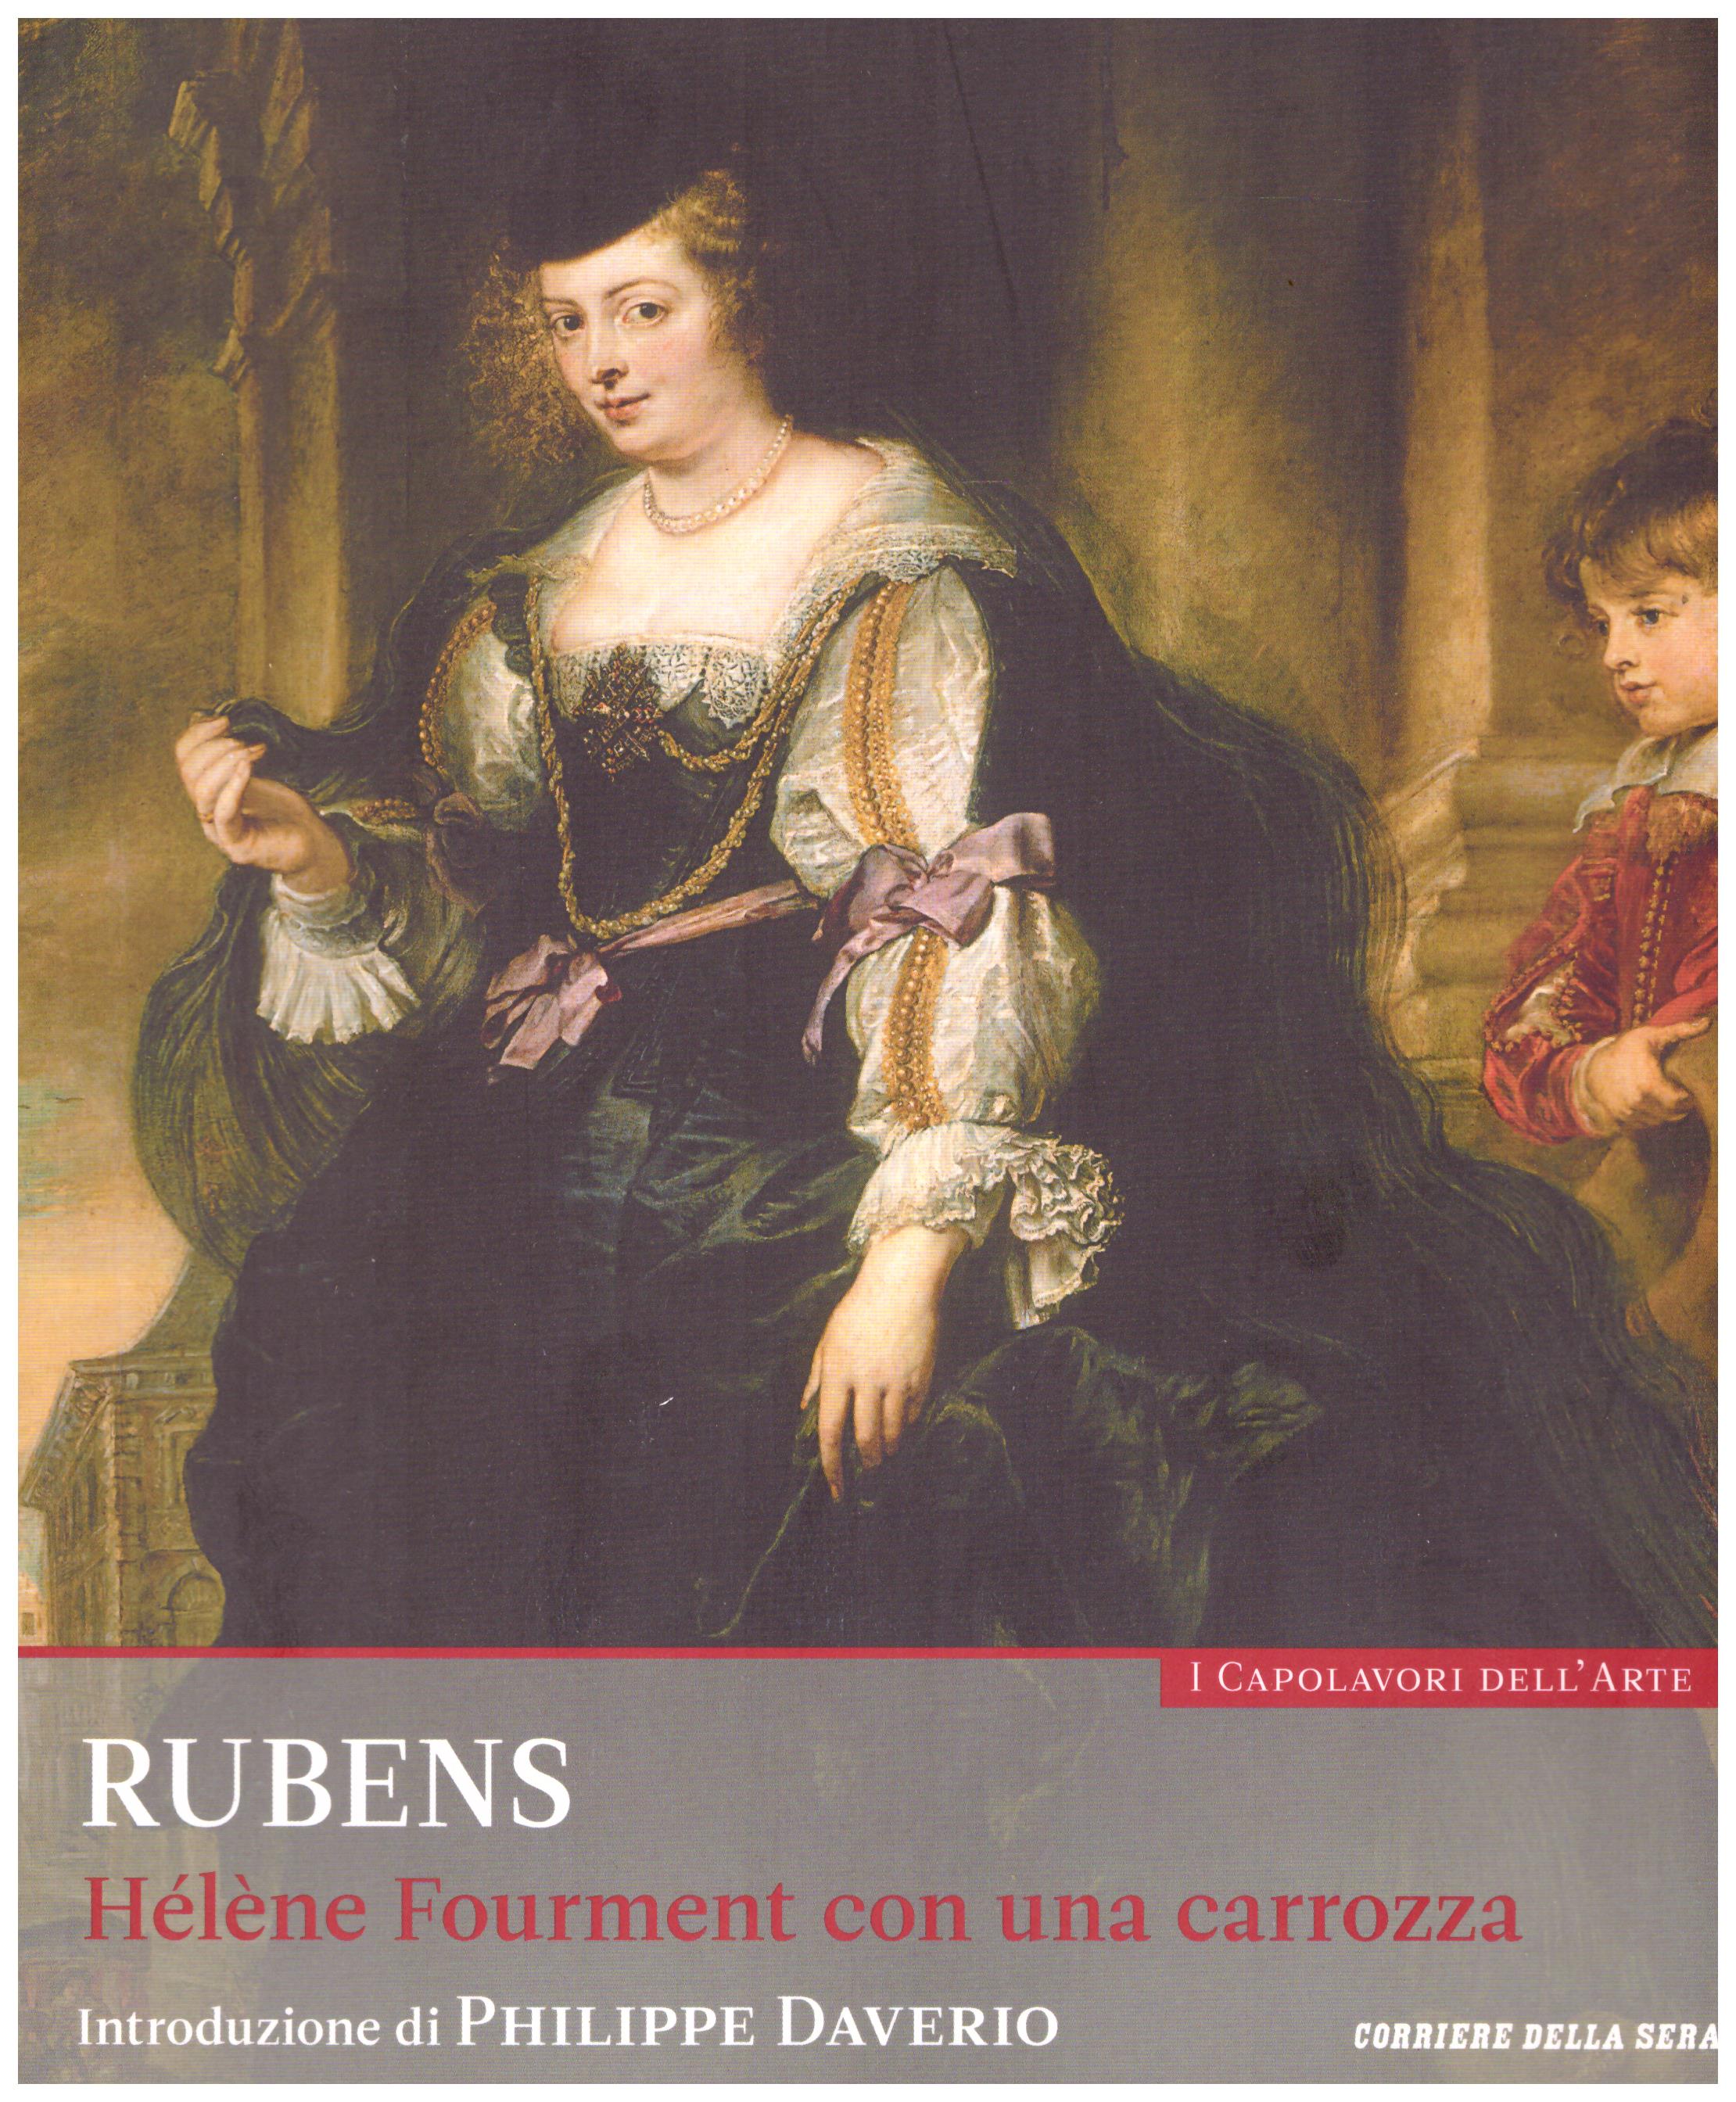 Titolo: I capolavori dell'arte, Rubens  n.33  Autore : AA.VV.   Editore: education,it/corriere della sera, 2015